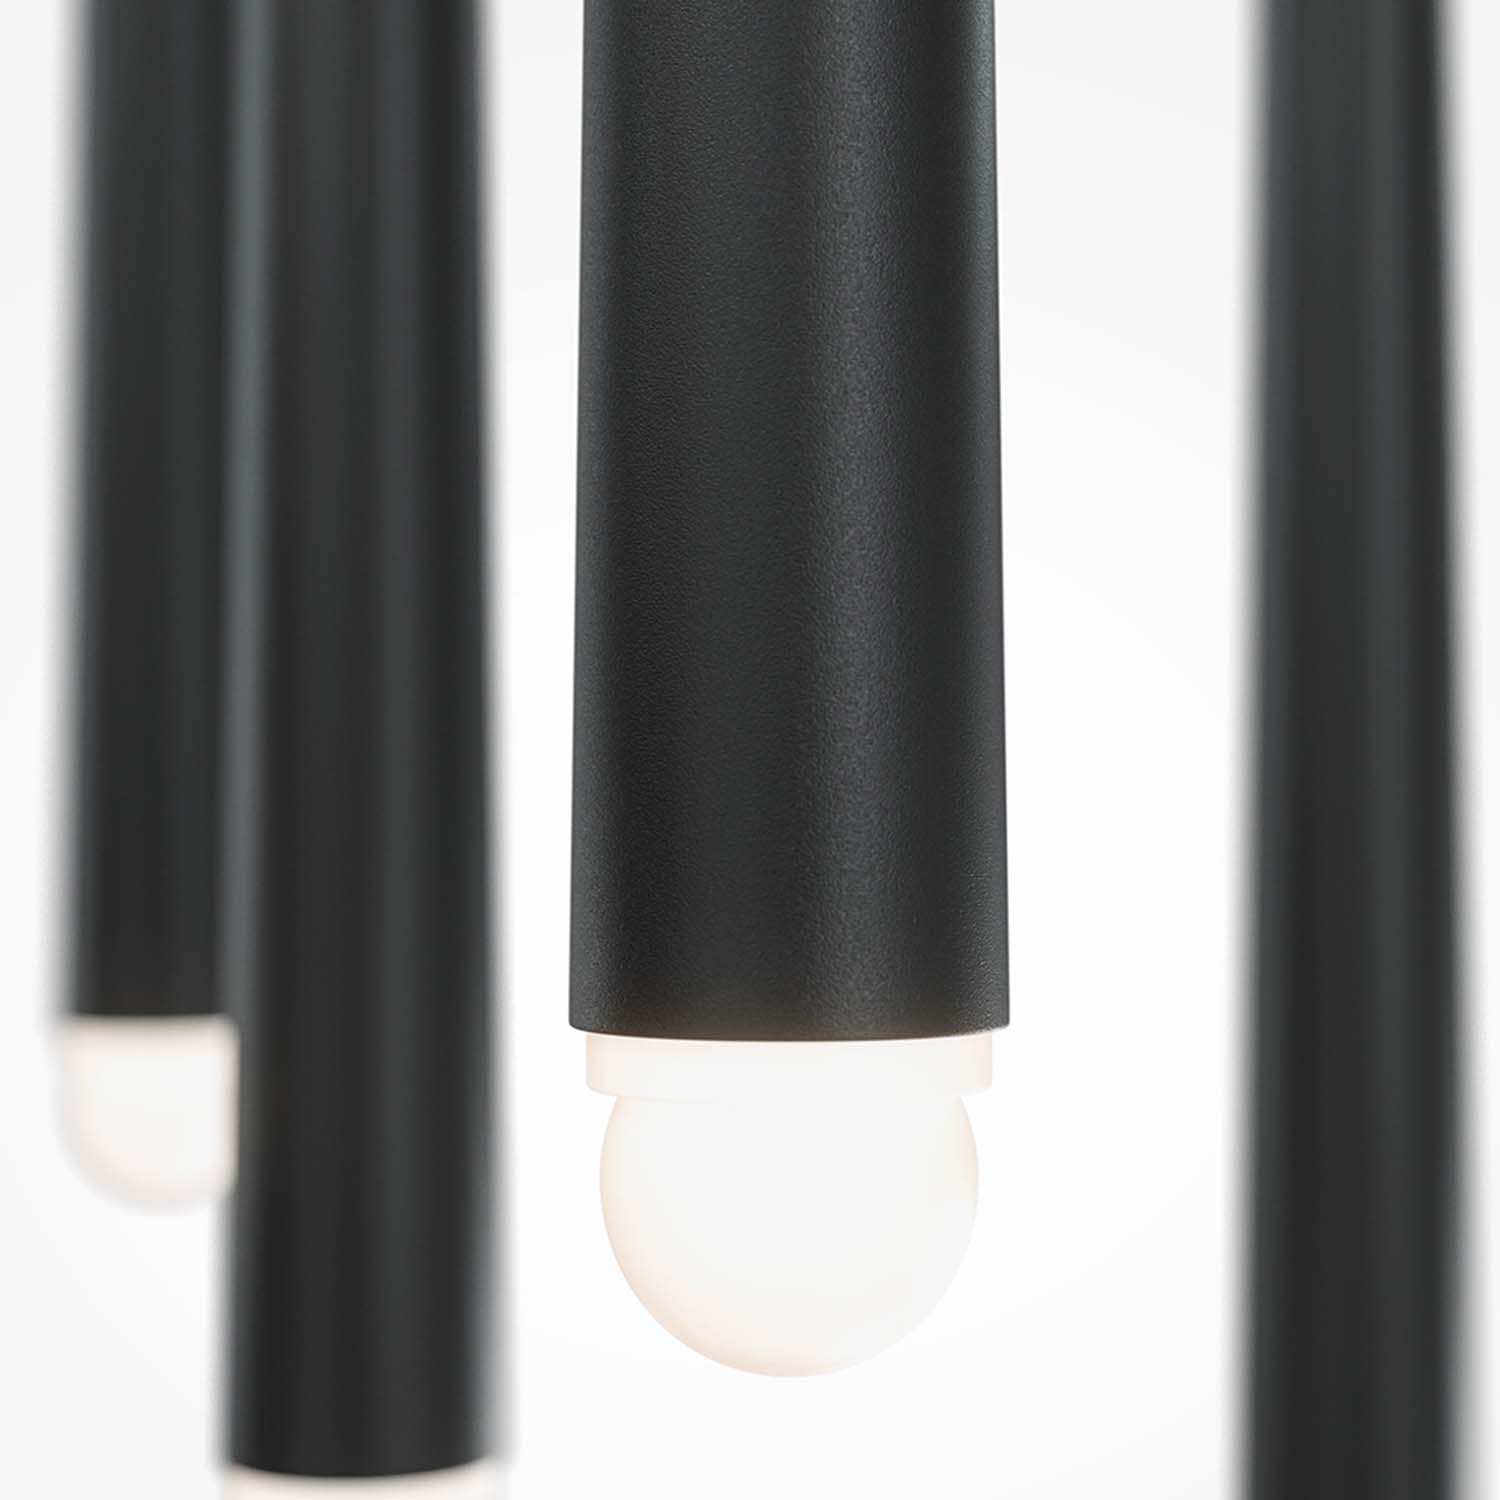 CASCADE - Composite pendant light for high ceilings